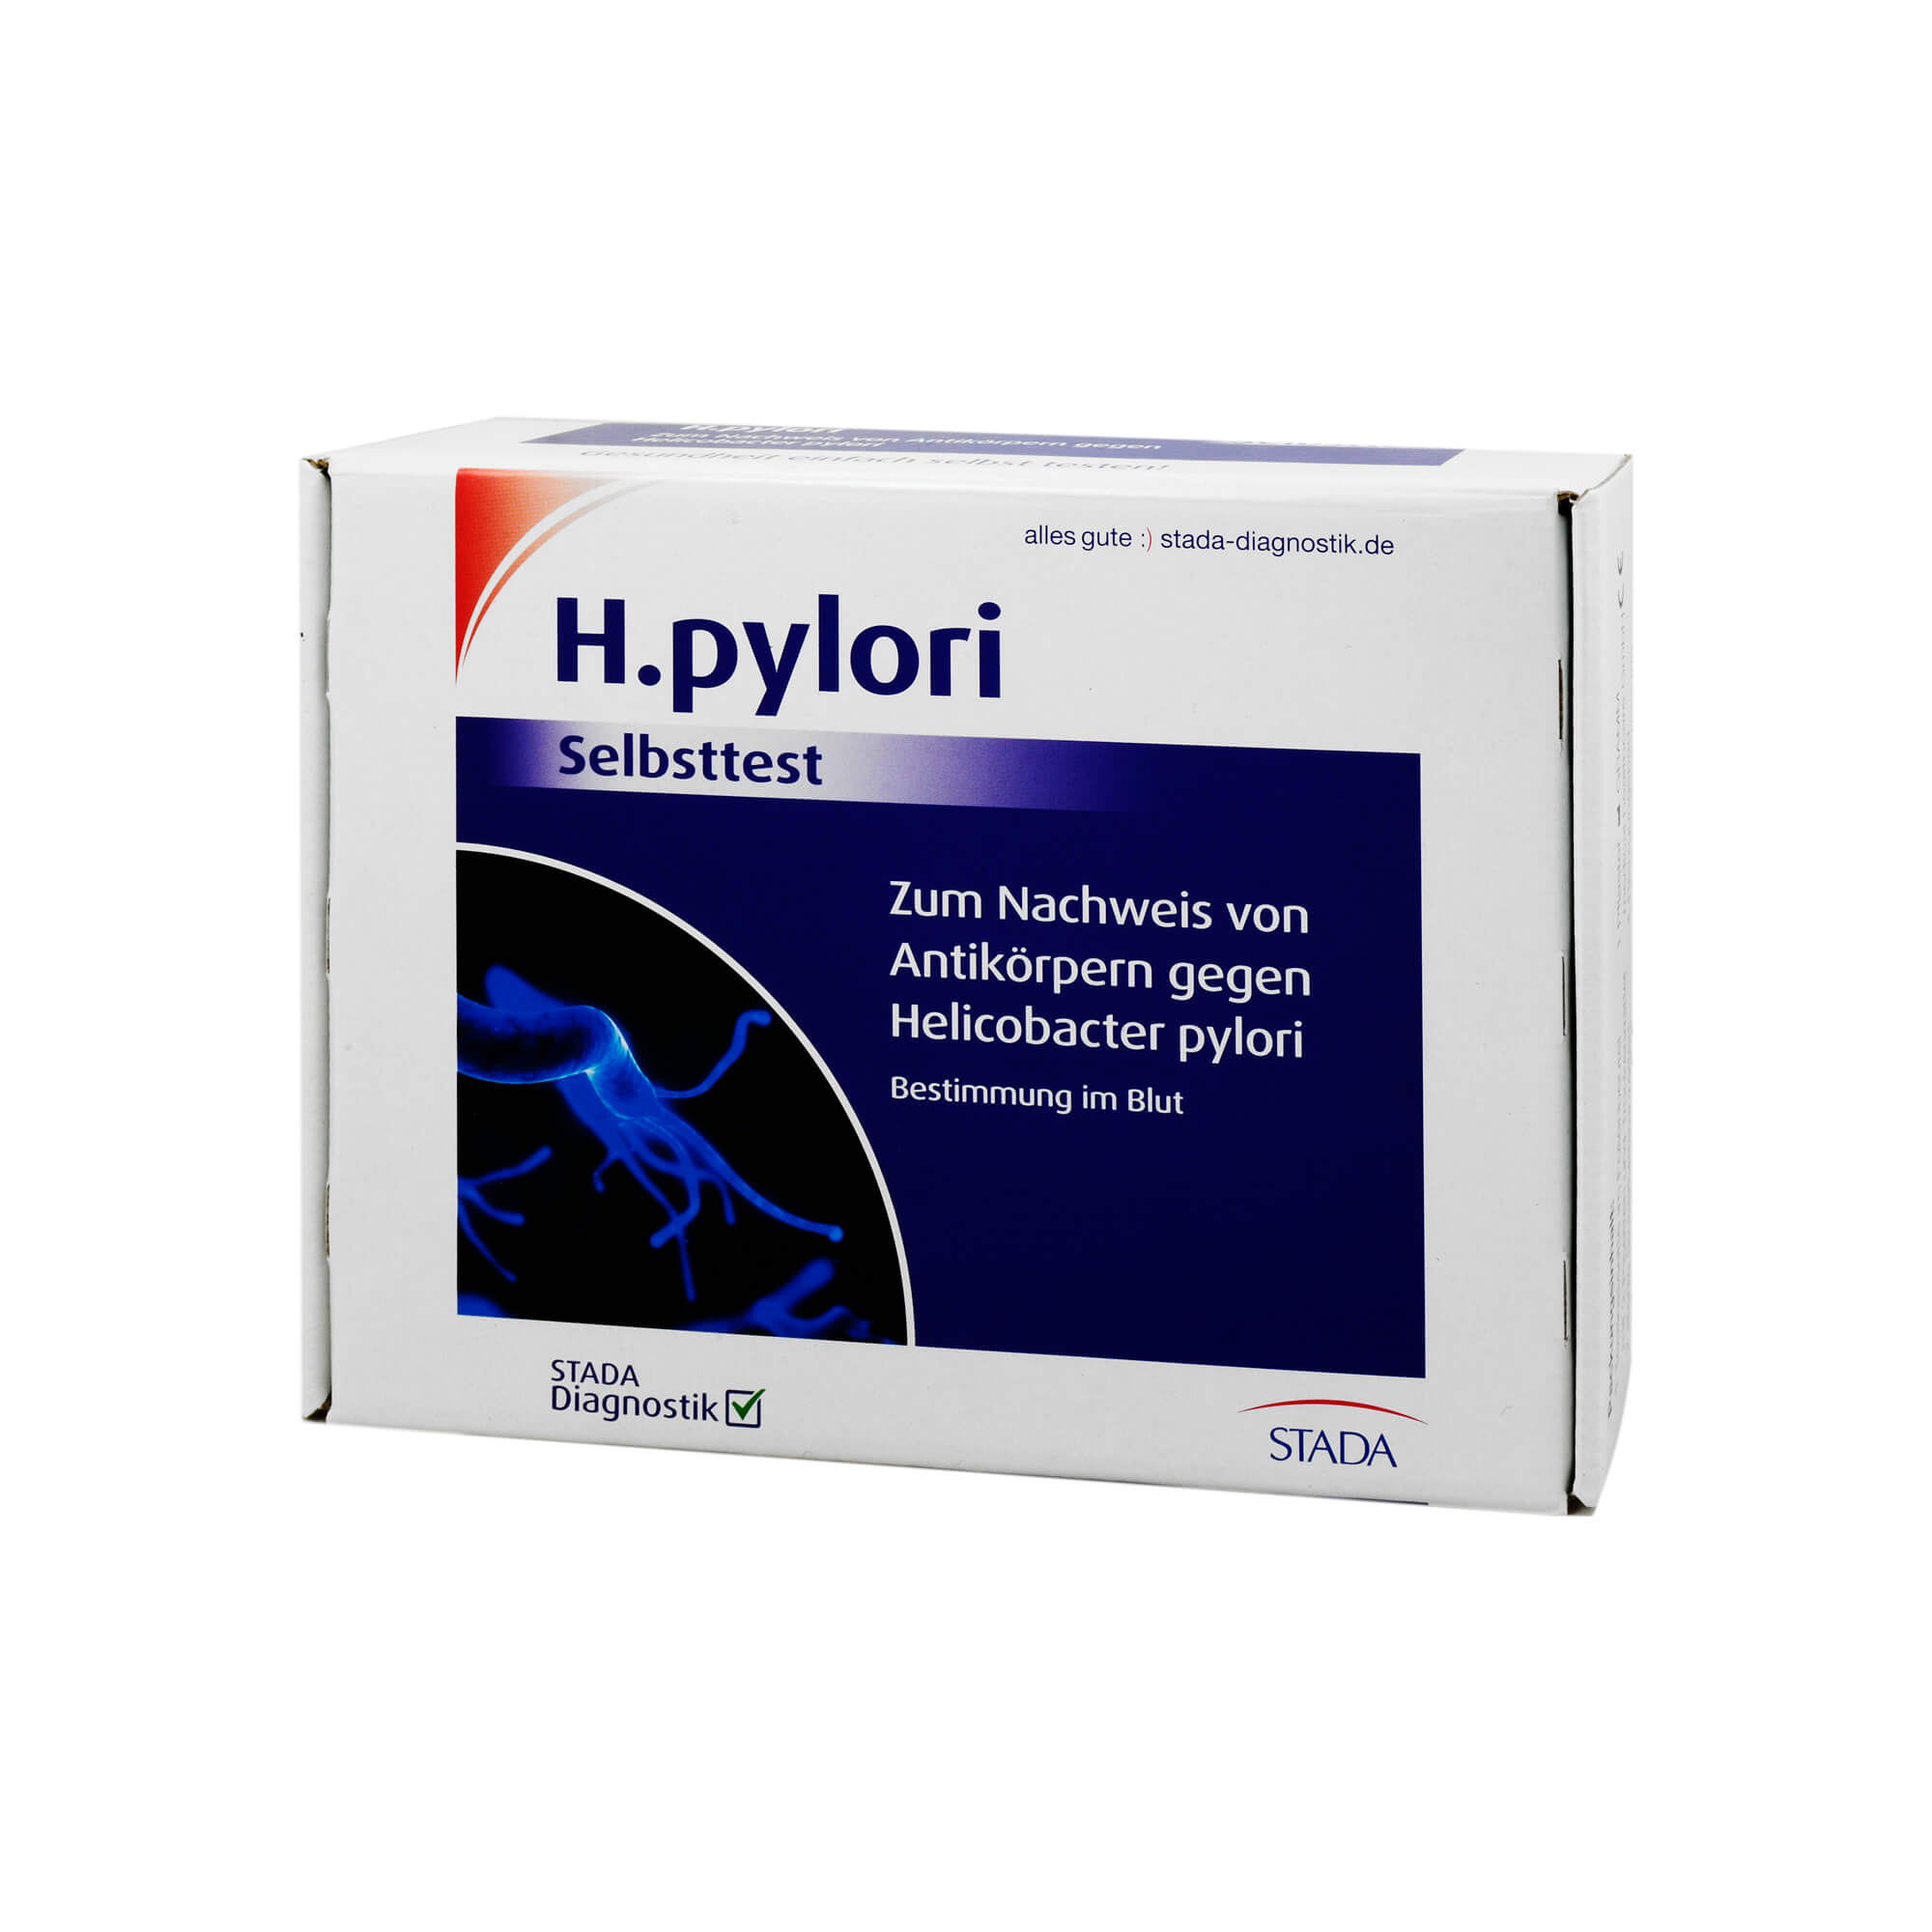 Zur Bestimmung von Antikörpern gegen Helicobacter pylori.